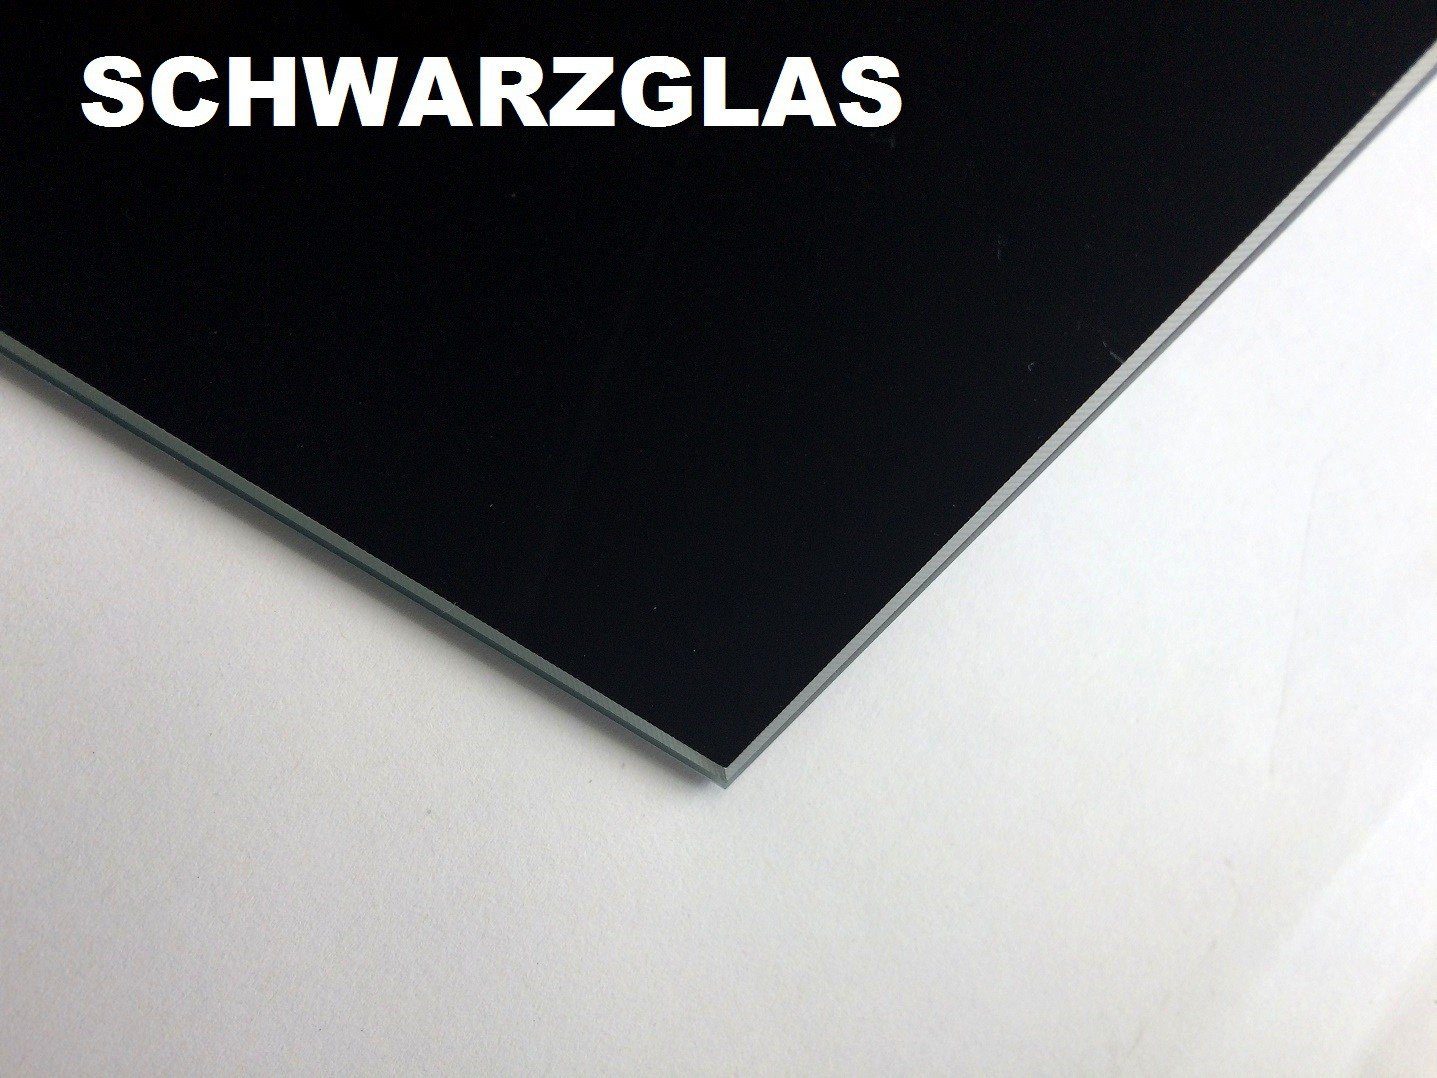 höhenverstellbar ausziehbar / Couchtisch Nussbaum | / Getöntes Schwarzglas MN-3 Nussbaum Glas Schwarzglas designimpex Walnuss Design